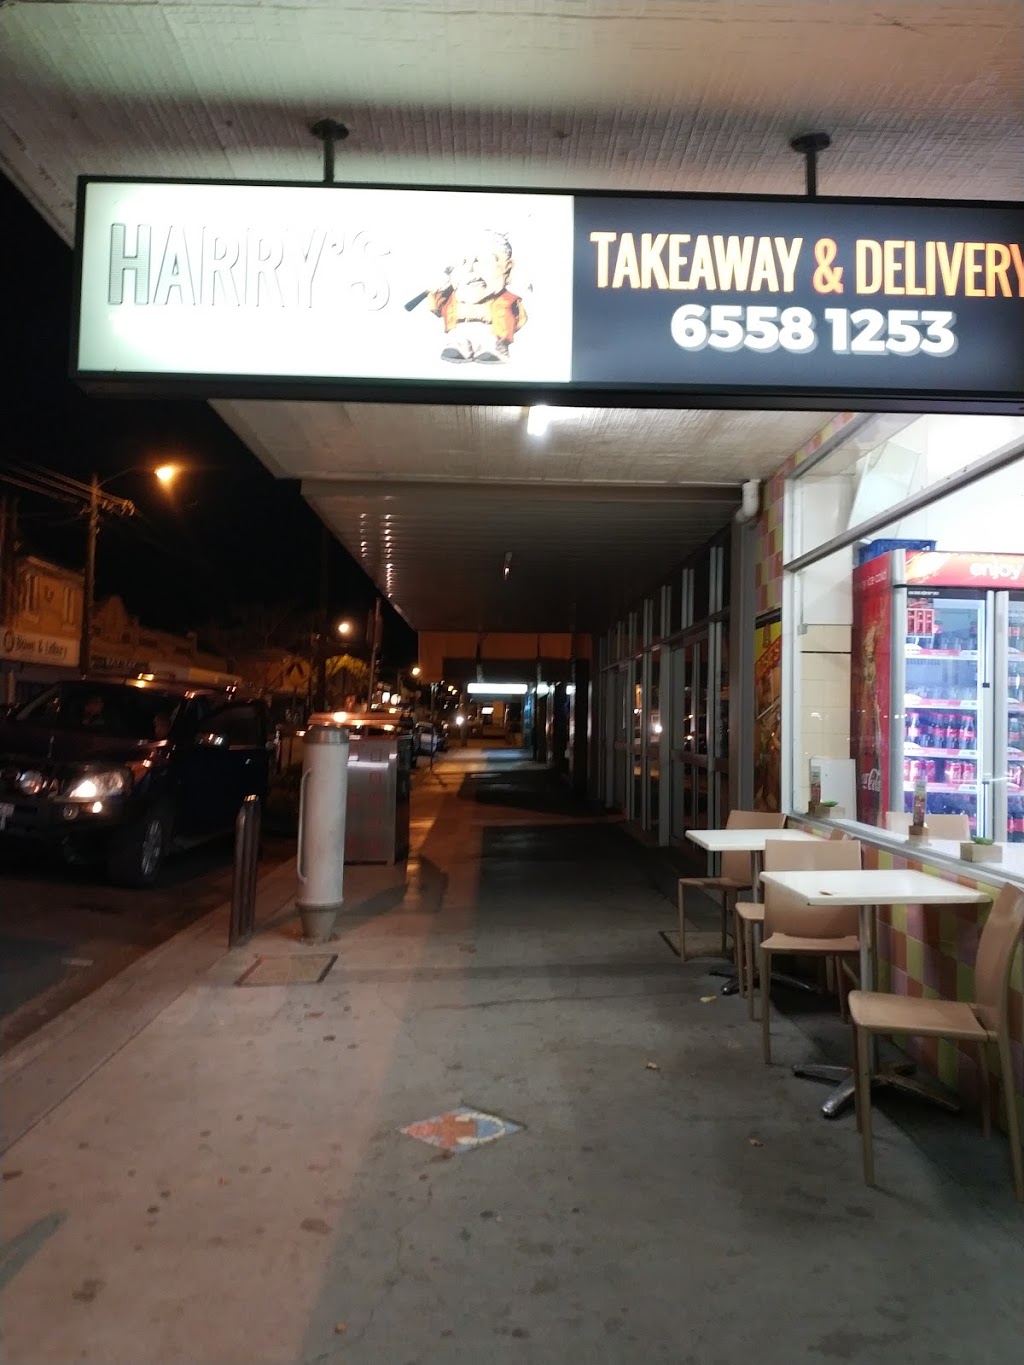 Harry’s Tucker Shop | meal takeaway | 35 Church St, Gloucester NSW 2422, Australia | 0265581253 OR +61 2 6558 1253